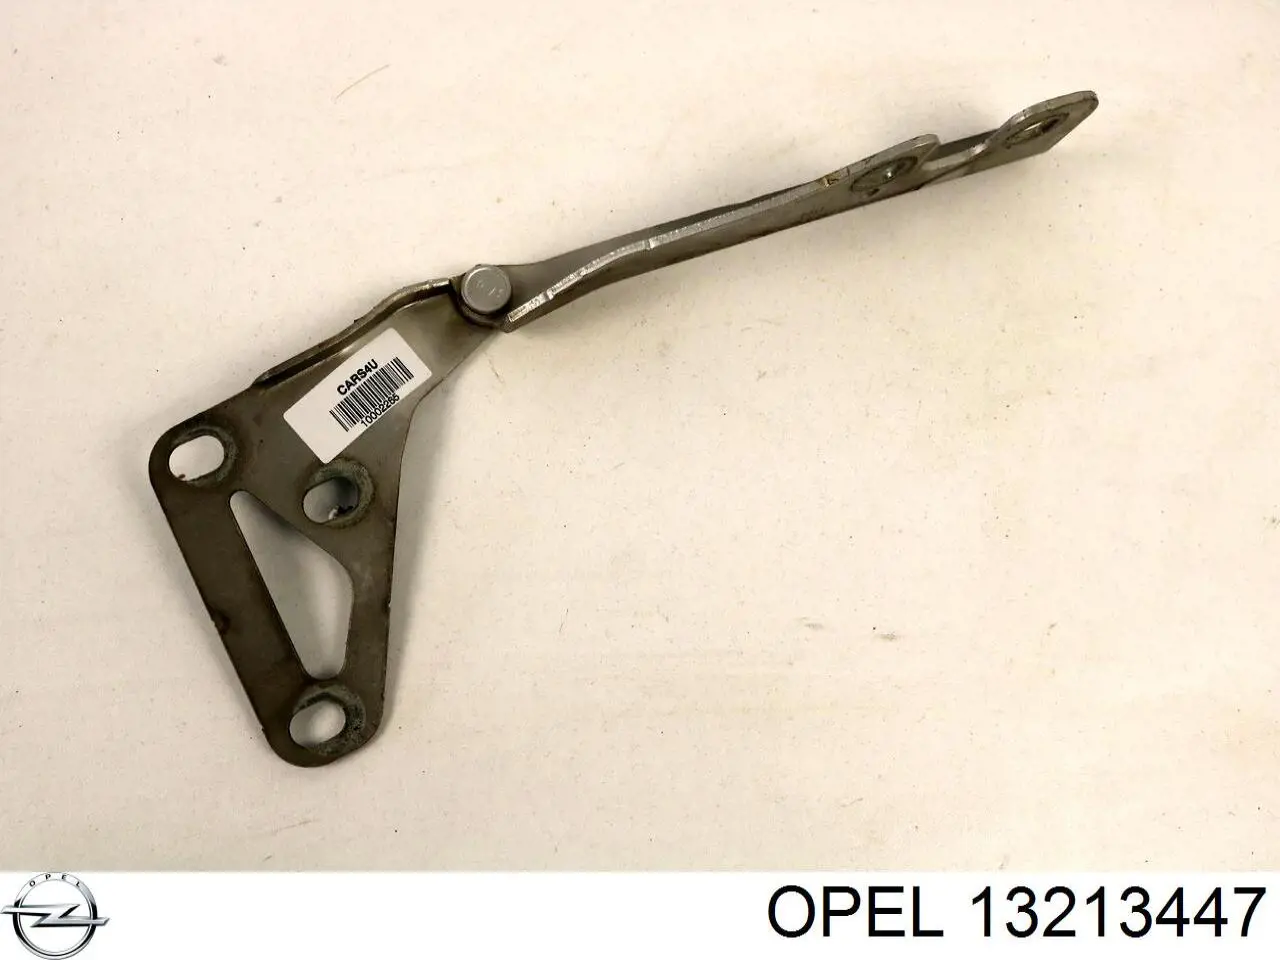 13213447 Opel петля капота левая